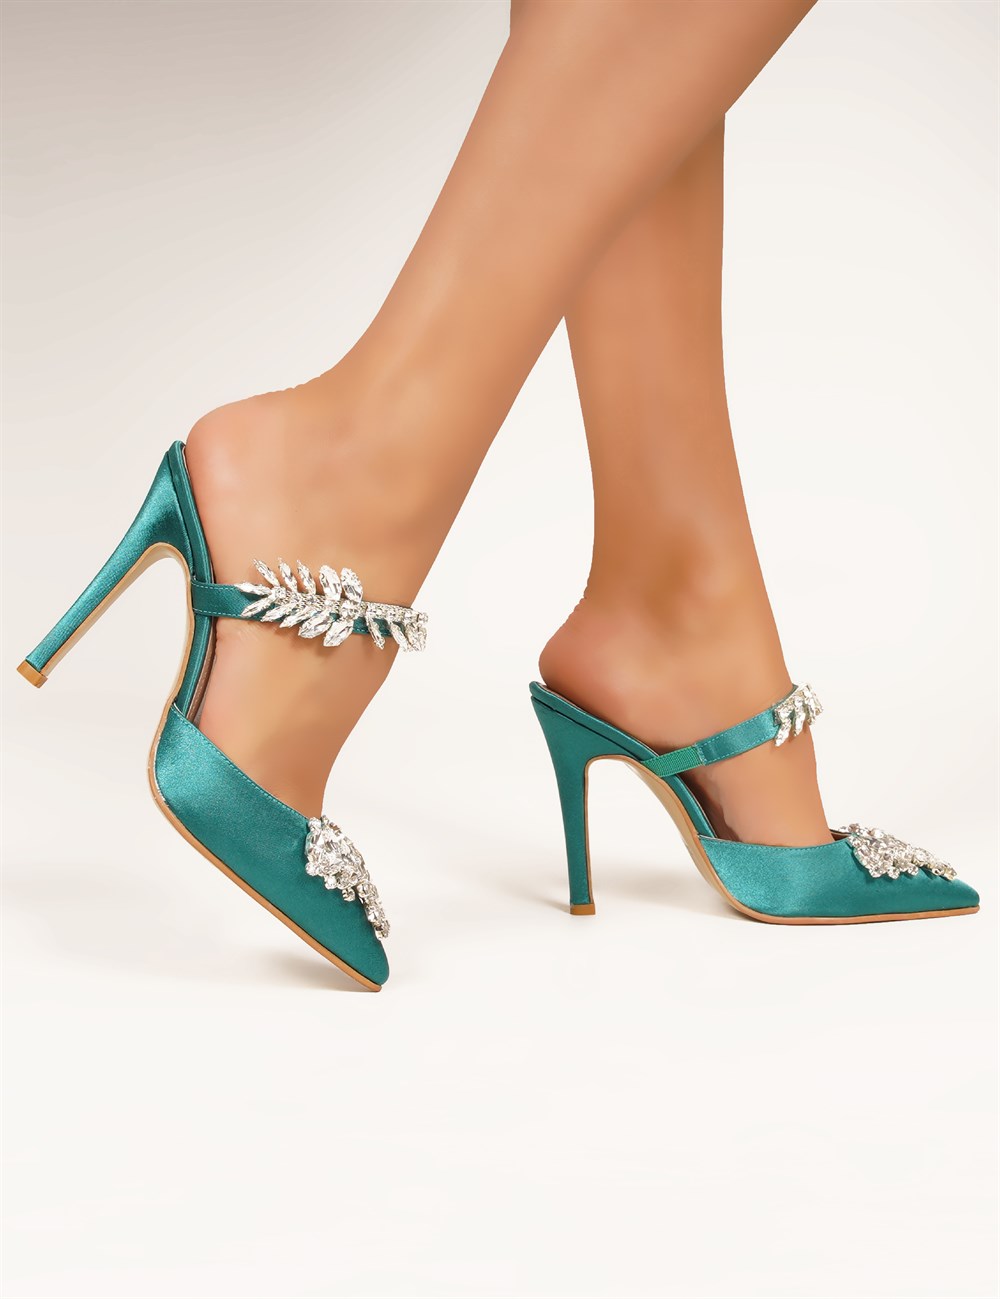 Desire Kristal Taşlı Ayakkabı Yeşil - Kadın Ayakkabı